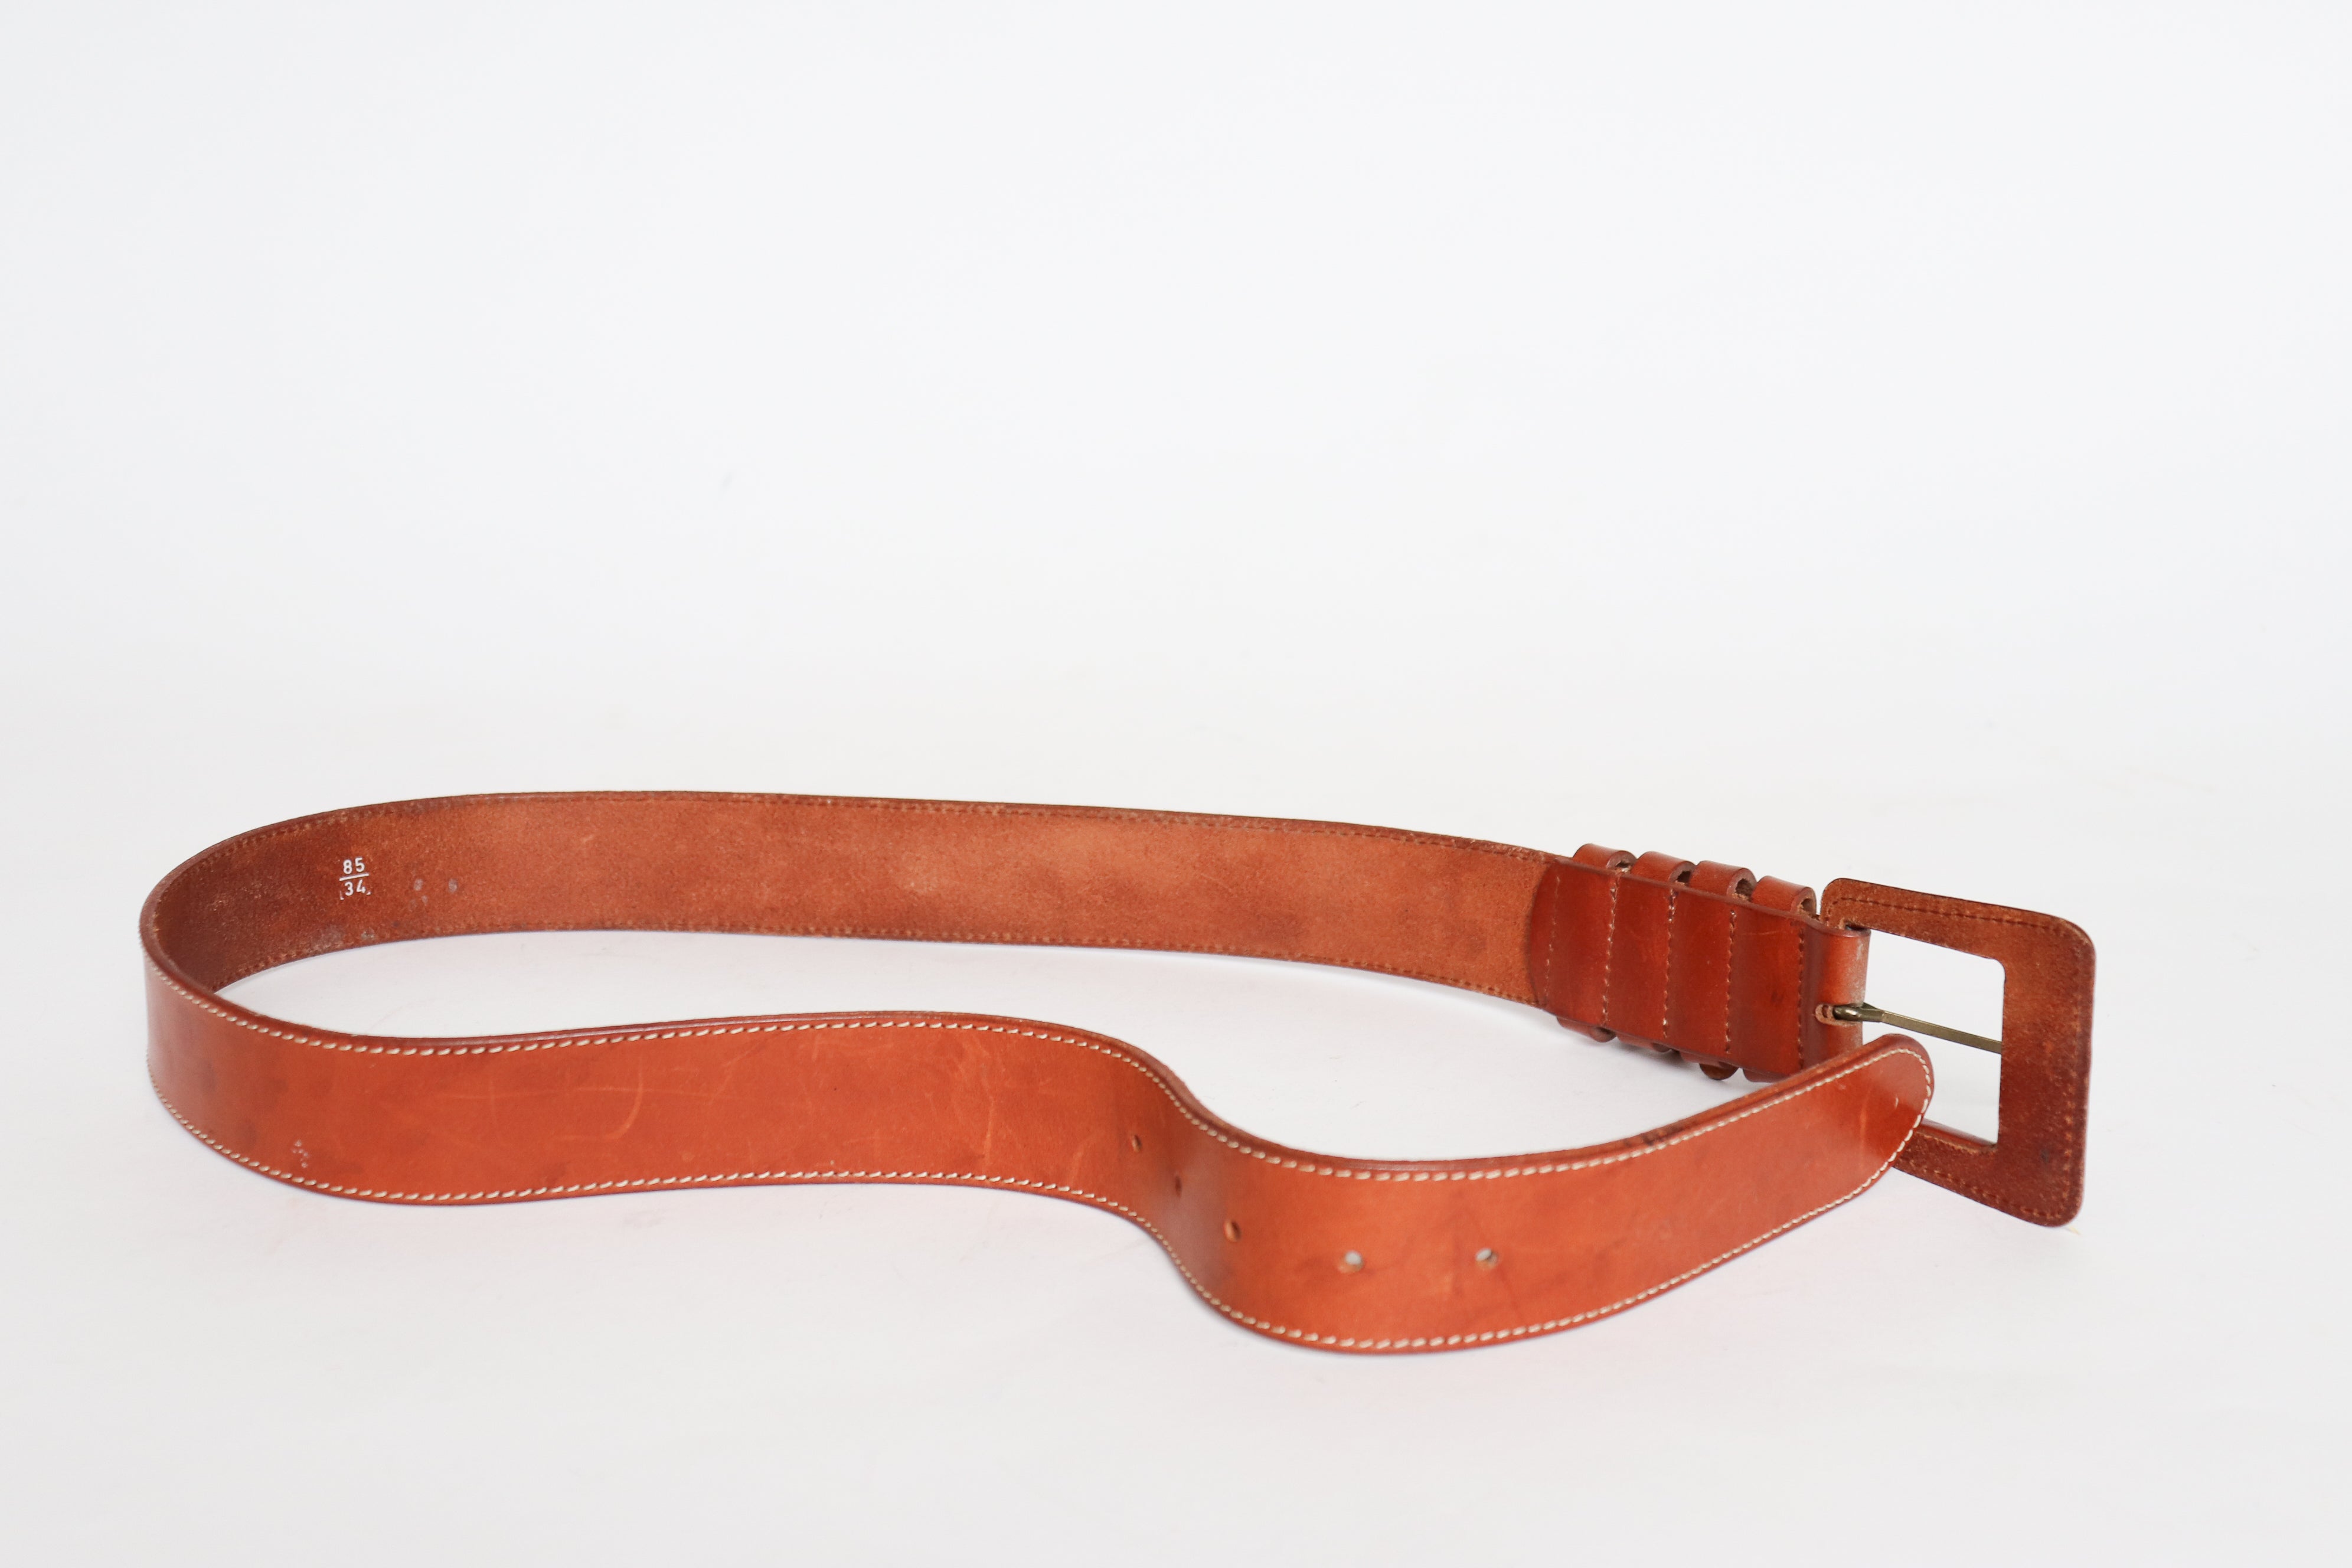 Tan Leather Vintage Belt - Wide - Brown - 85 cm / 34” - M